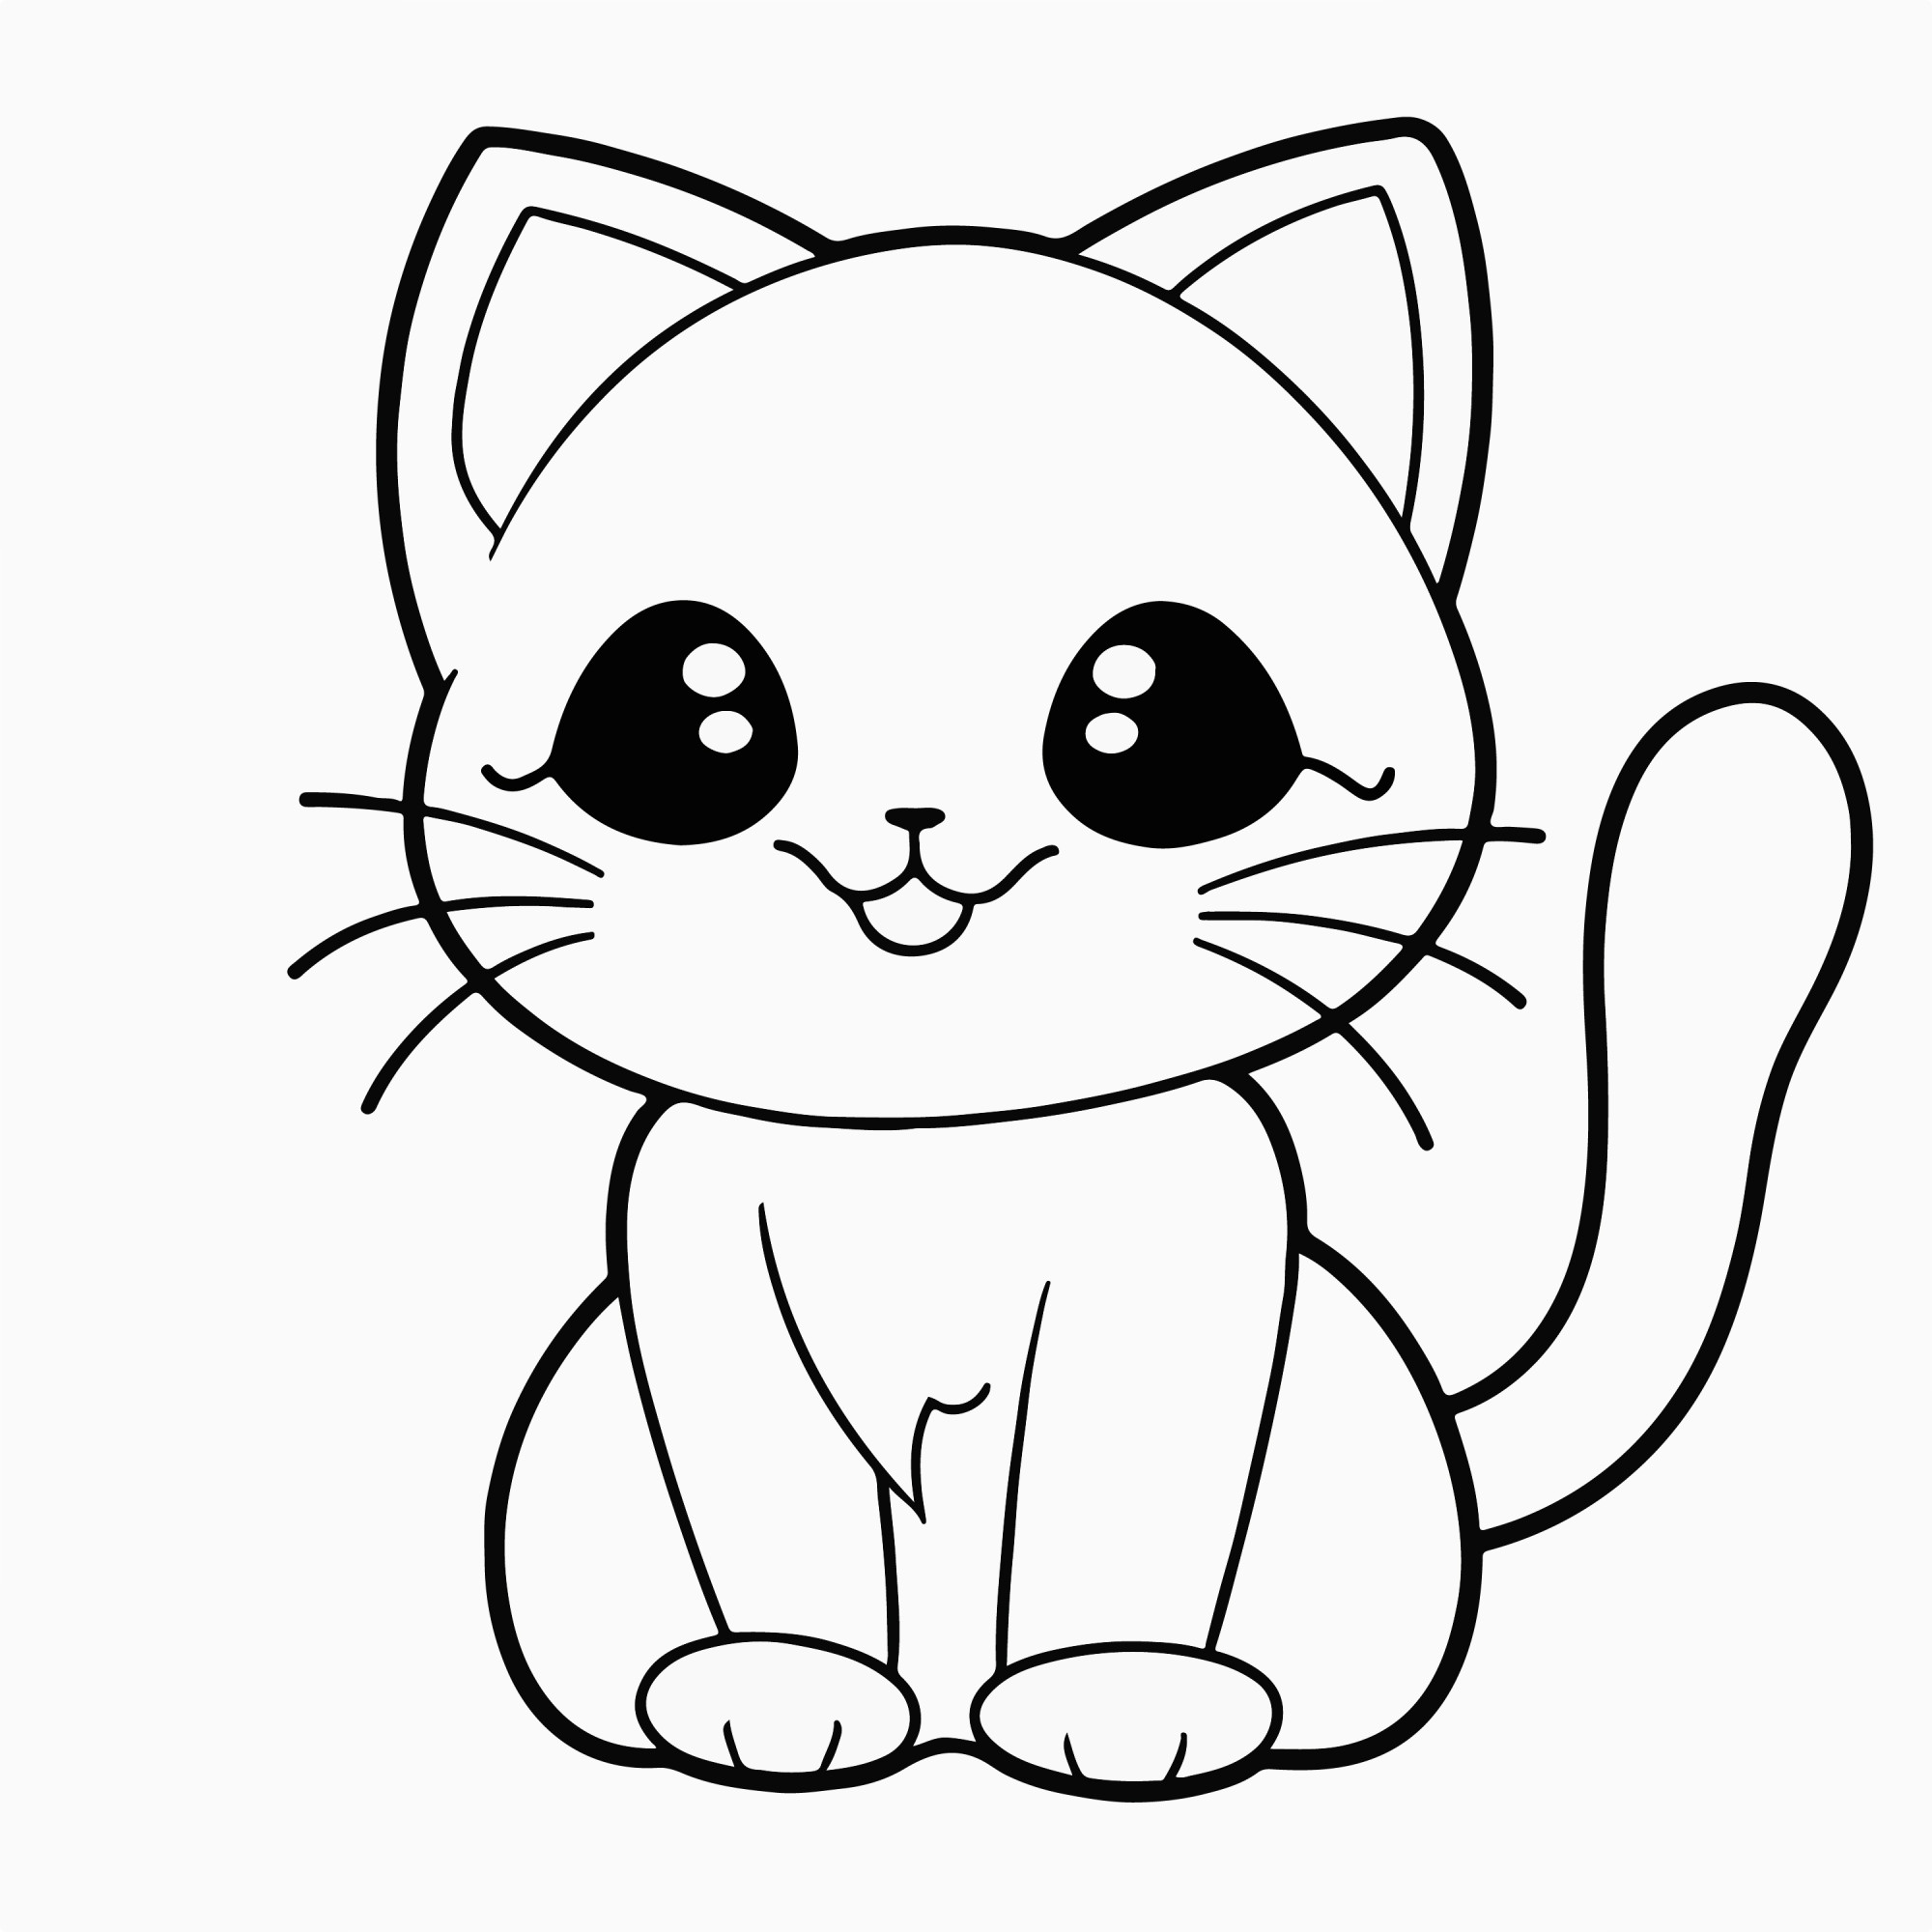 Раскраска для детей: аниме котенок с большими глазами